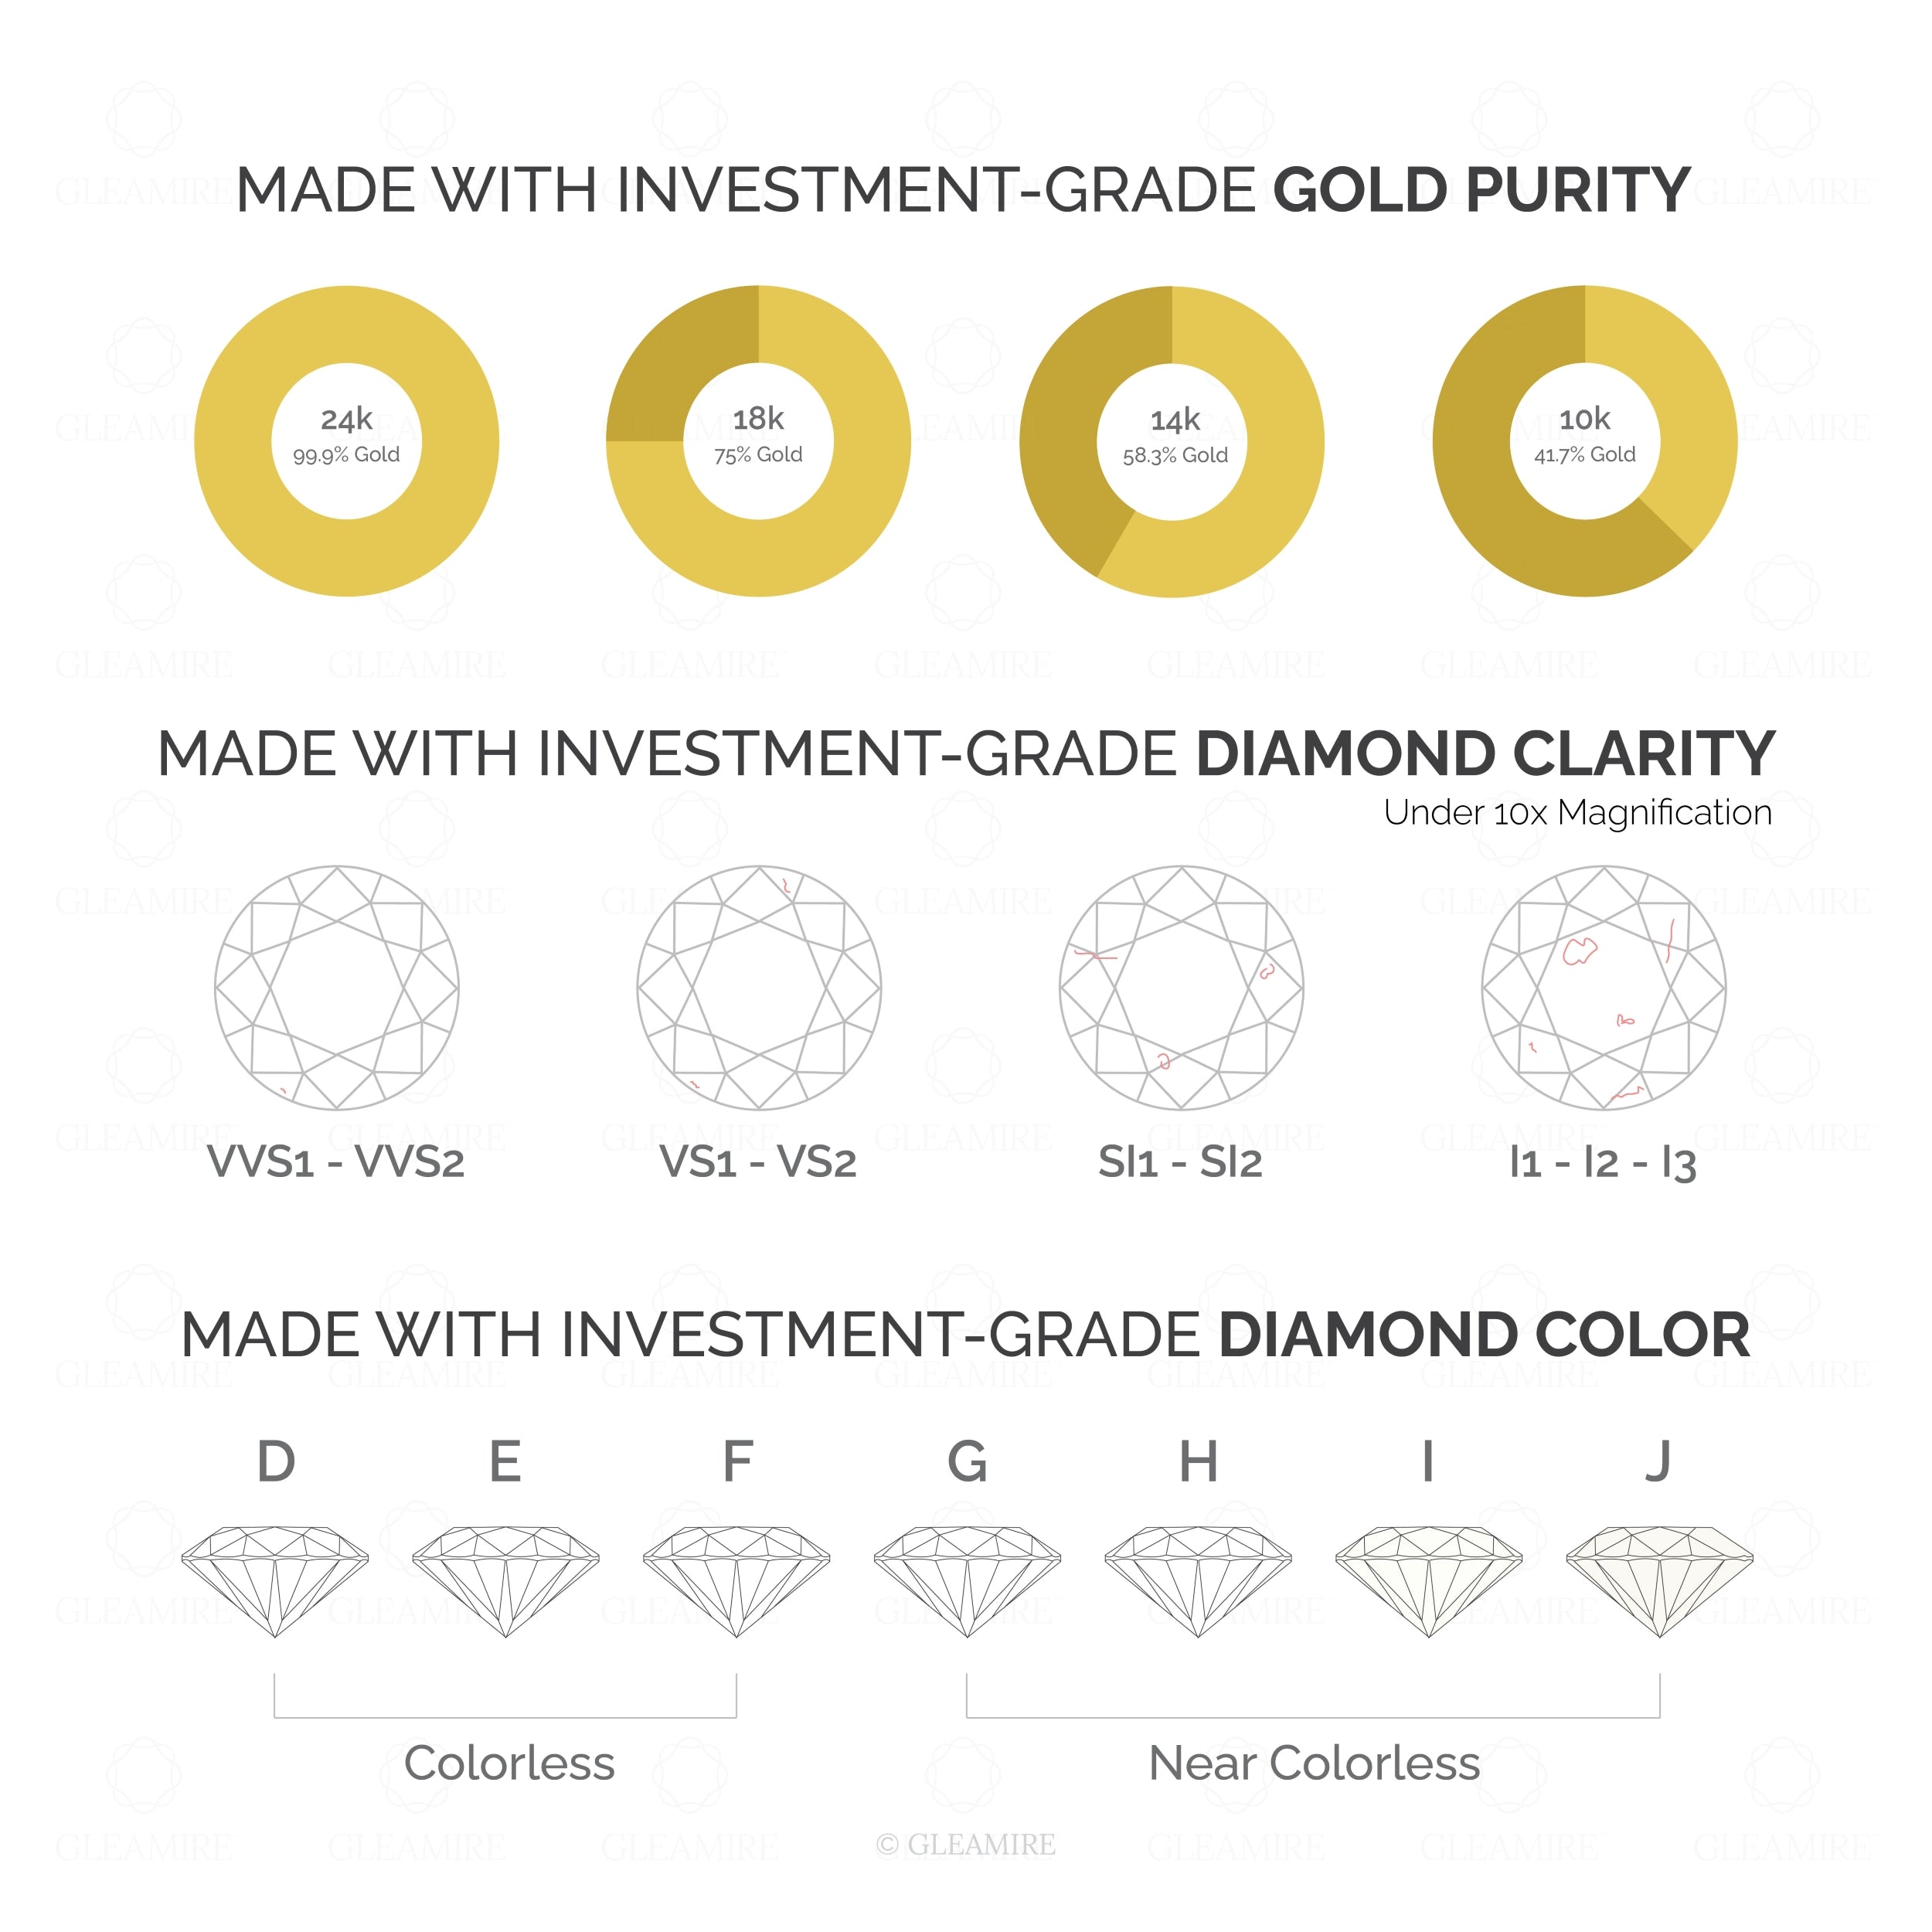 Certified 14K Gold 0.15ct Natural Diamond G-I1 Designer Outline Band White Ring